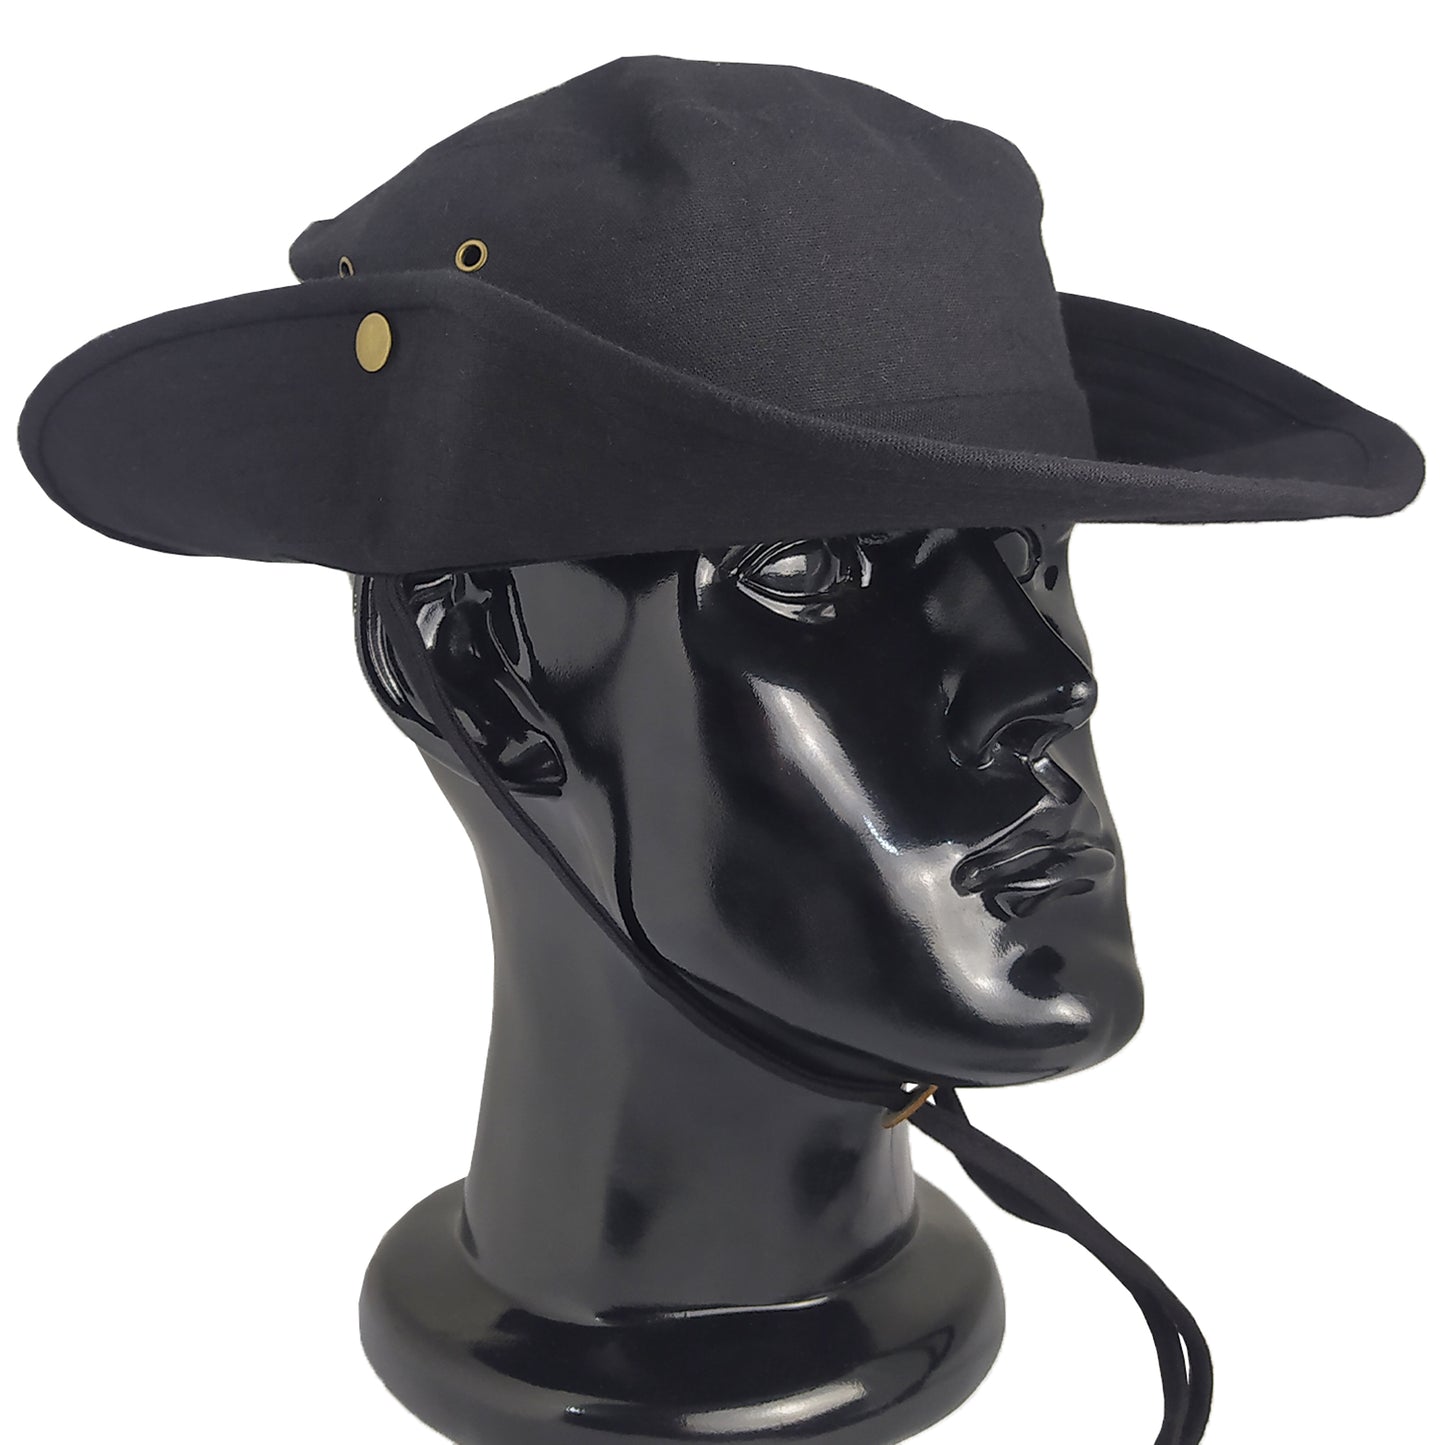 Καπέλο Bush Μαύρο 12043 BLACK